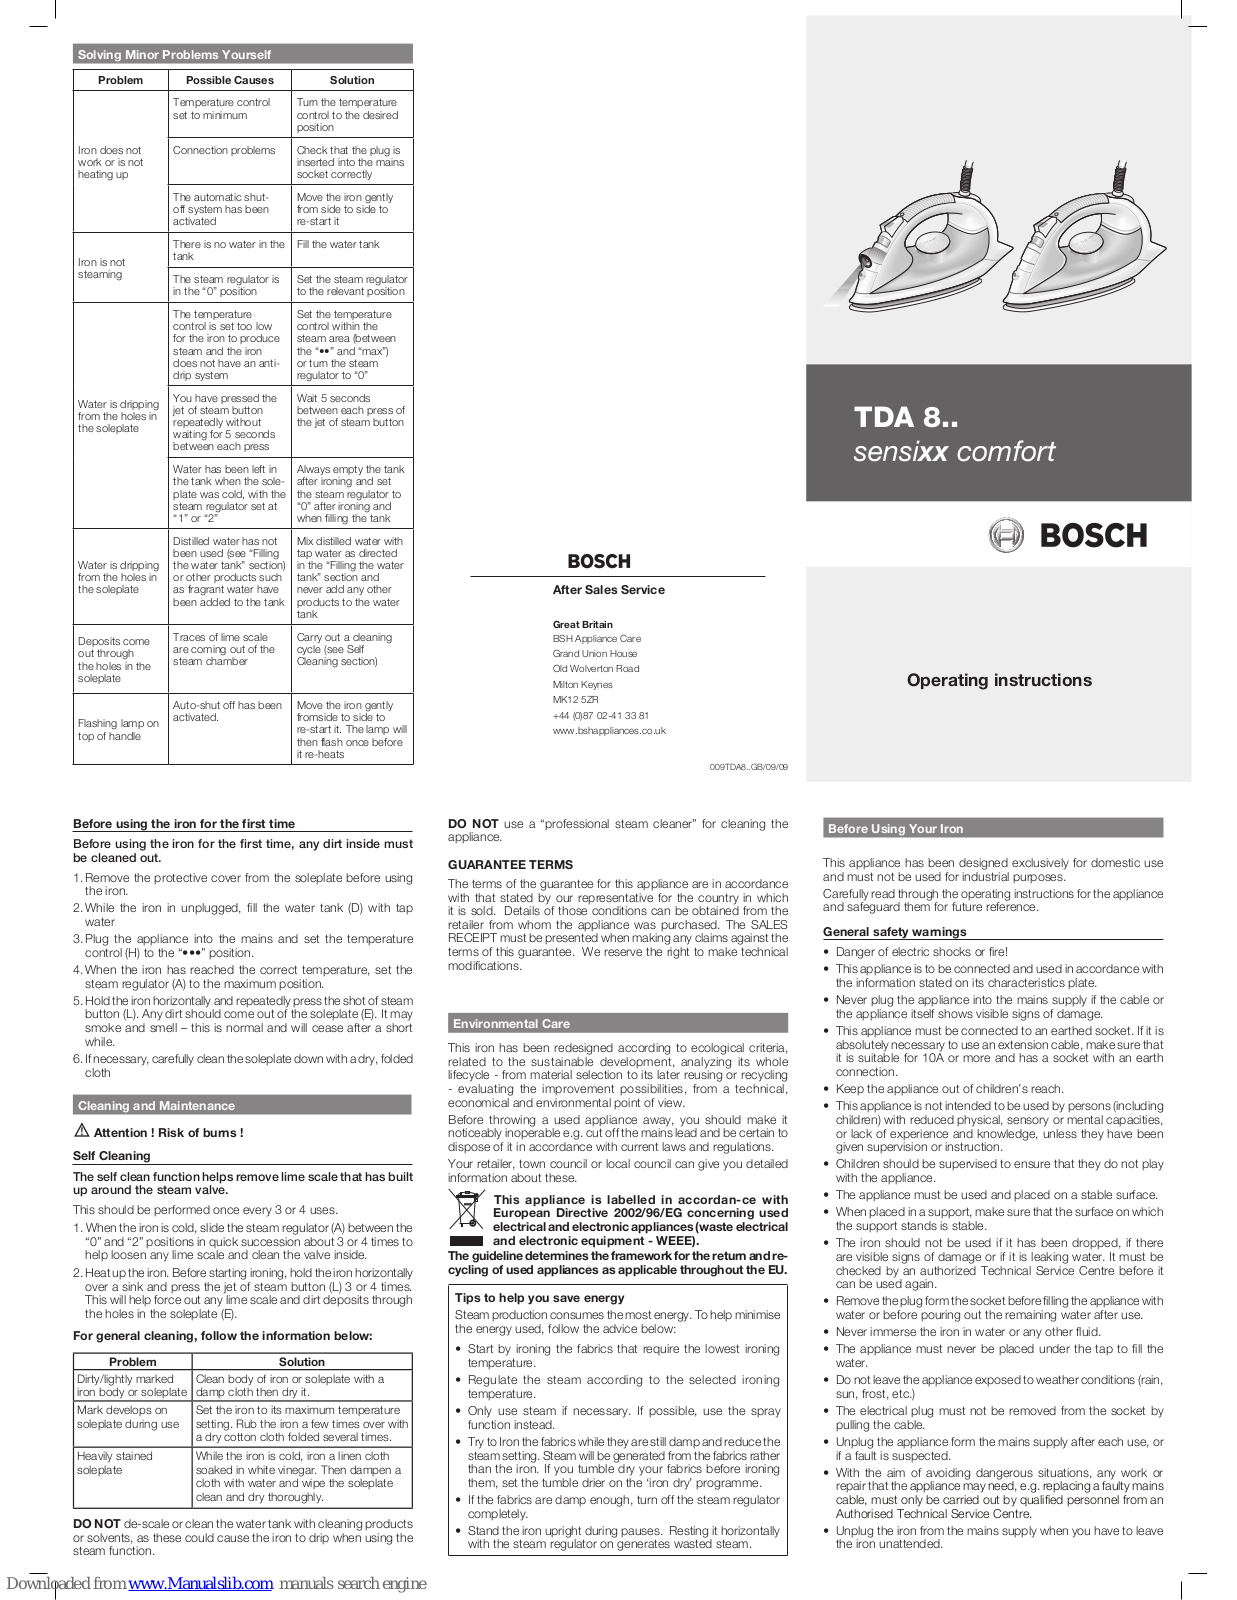 Bosch TDA 8.., sensixx comfort TDA 8 Operating Instructions Manual